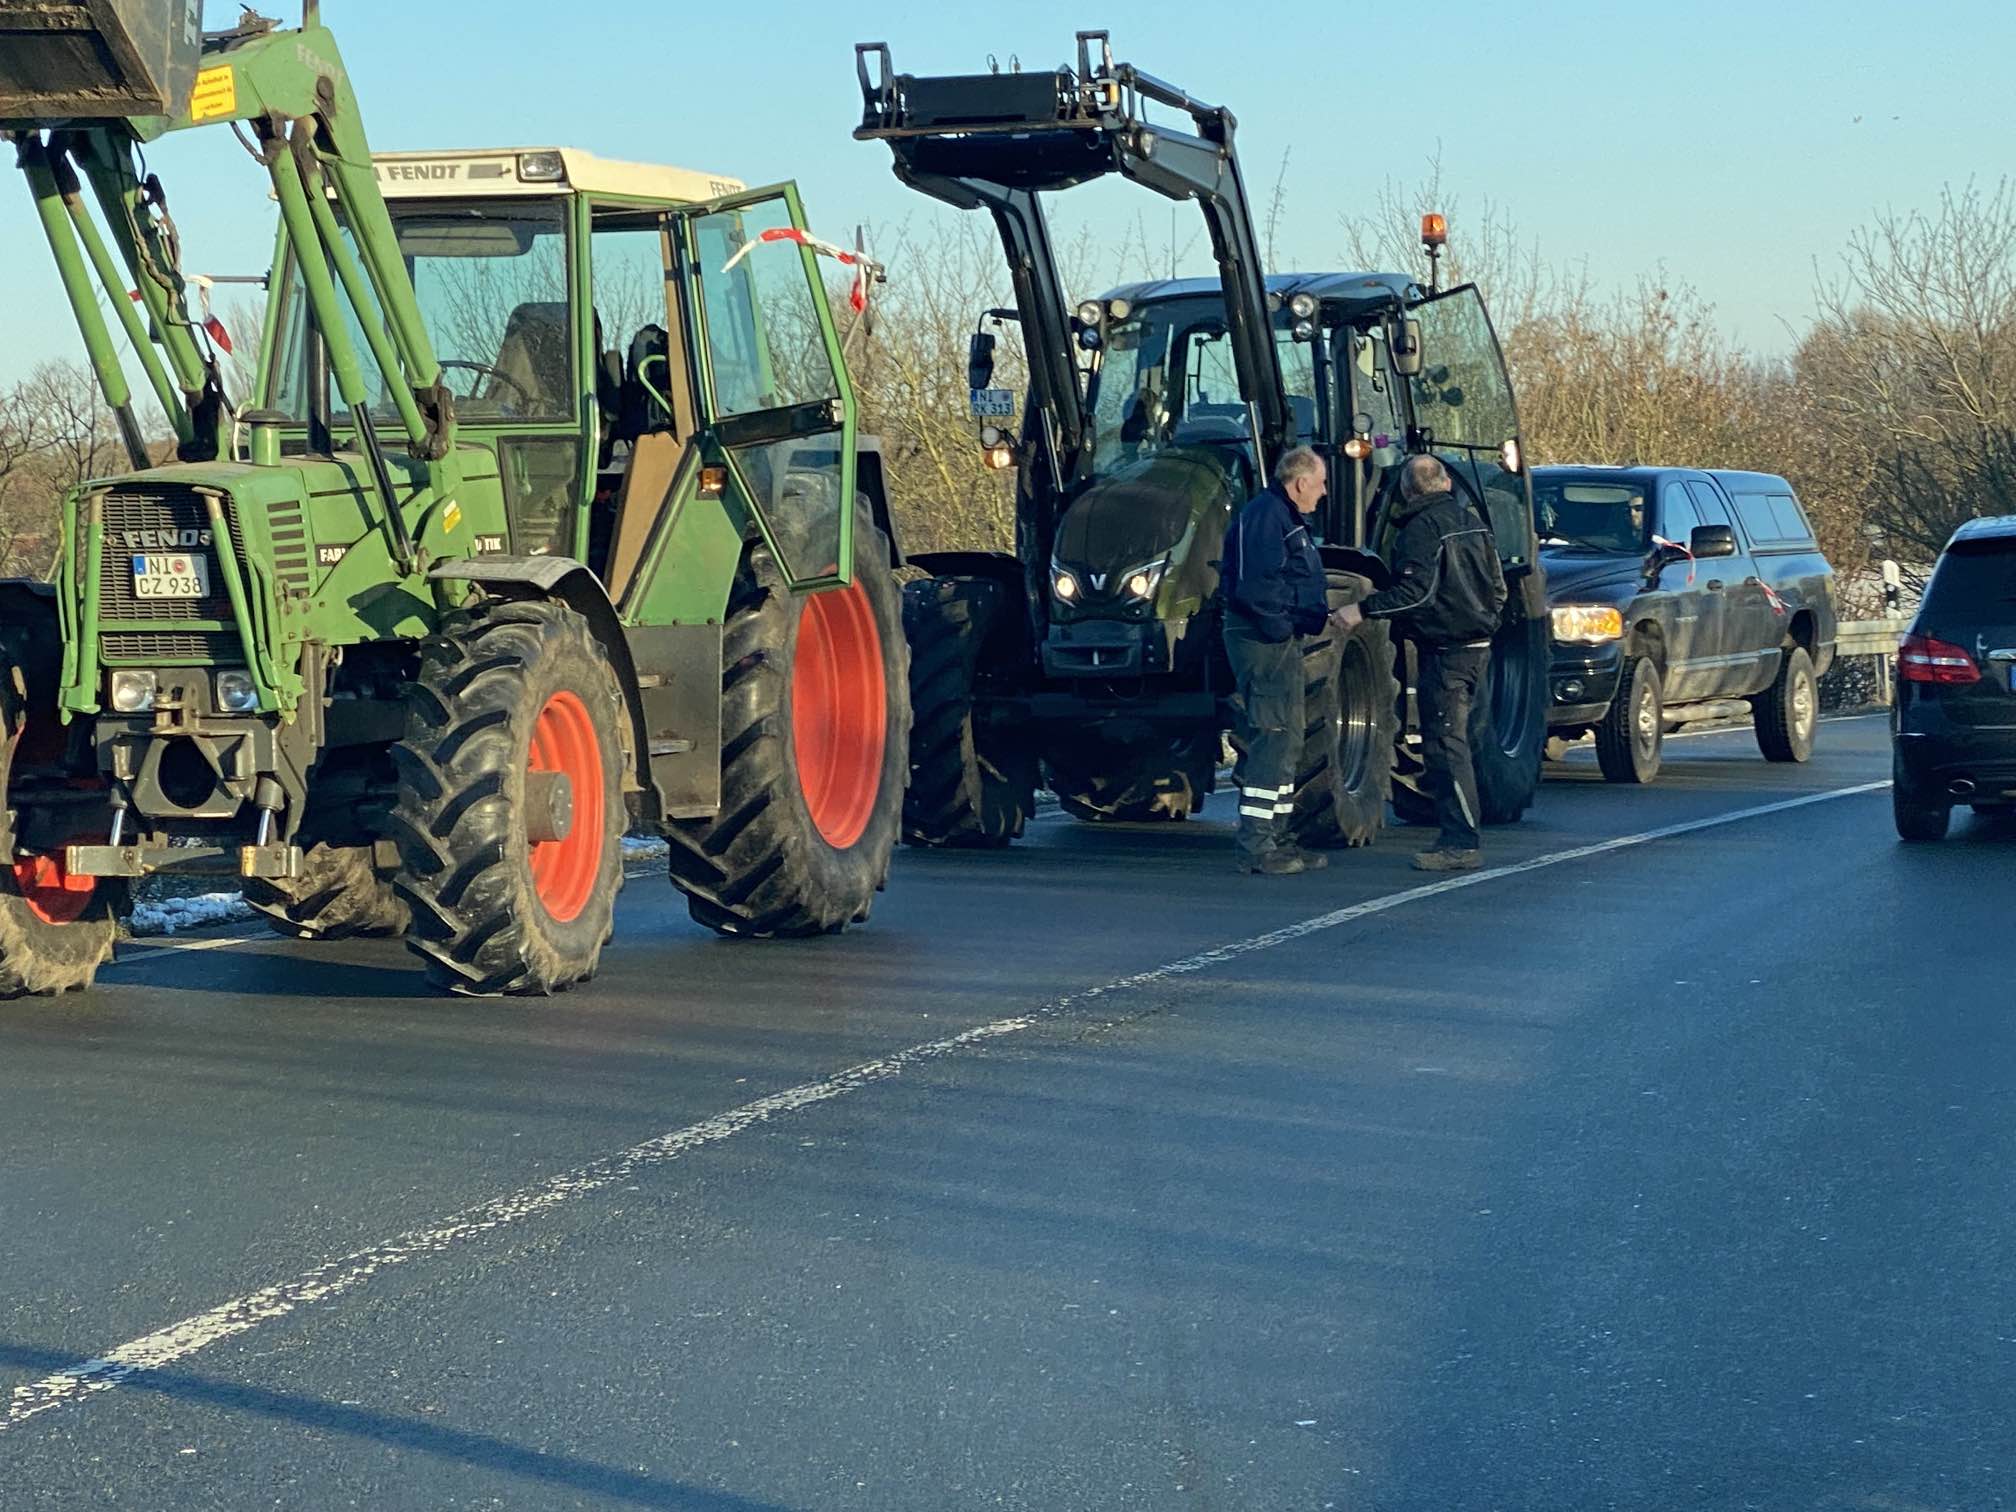 Liveticker: Bauern-Proteste im Landkreis Nienburg – alle Infos zu den Demos